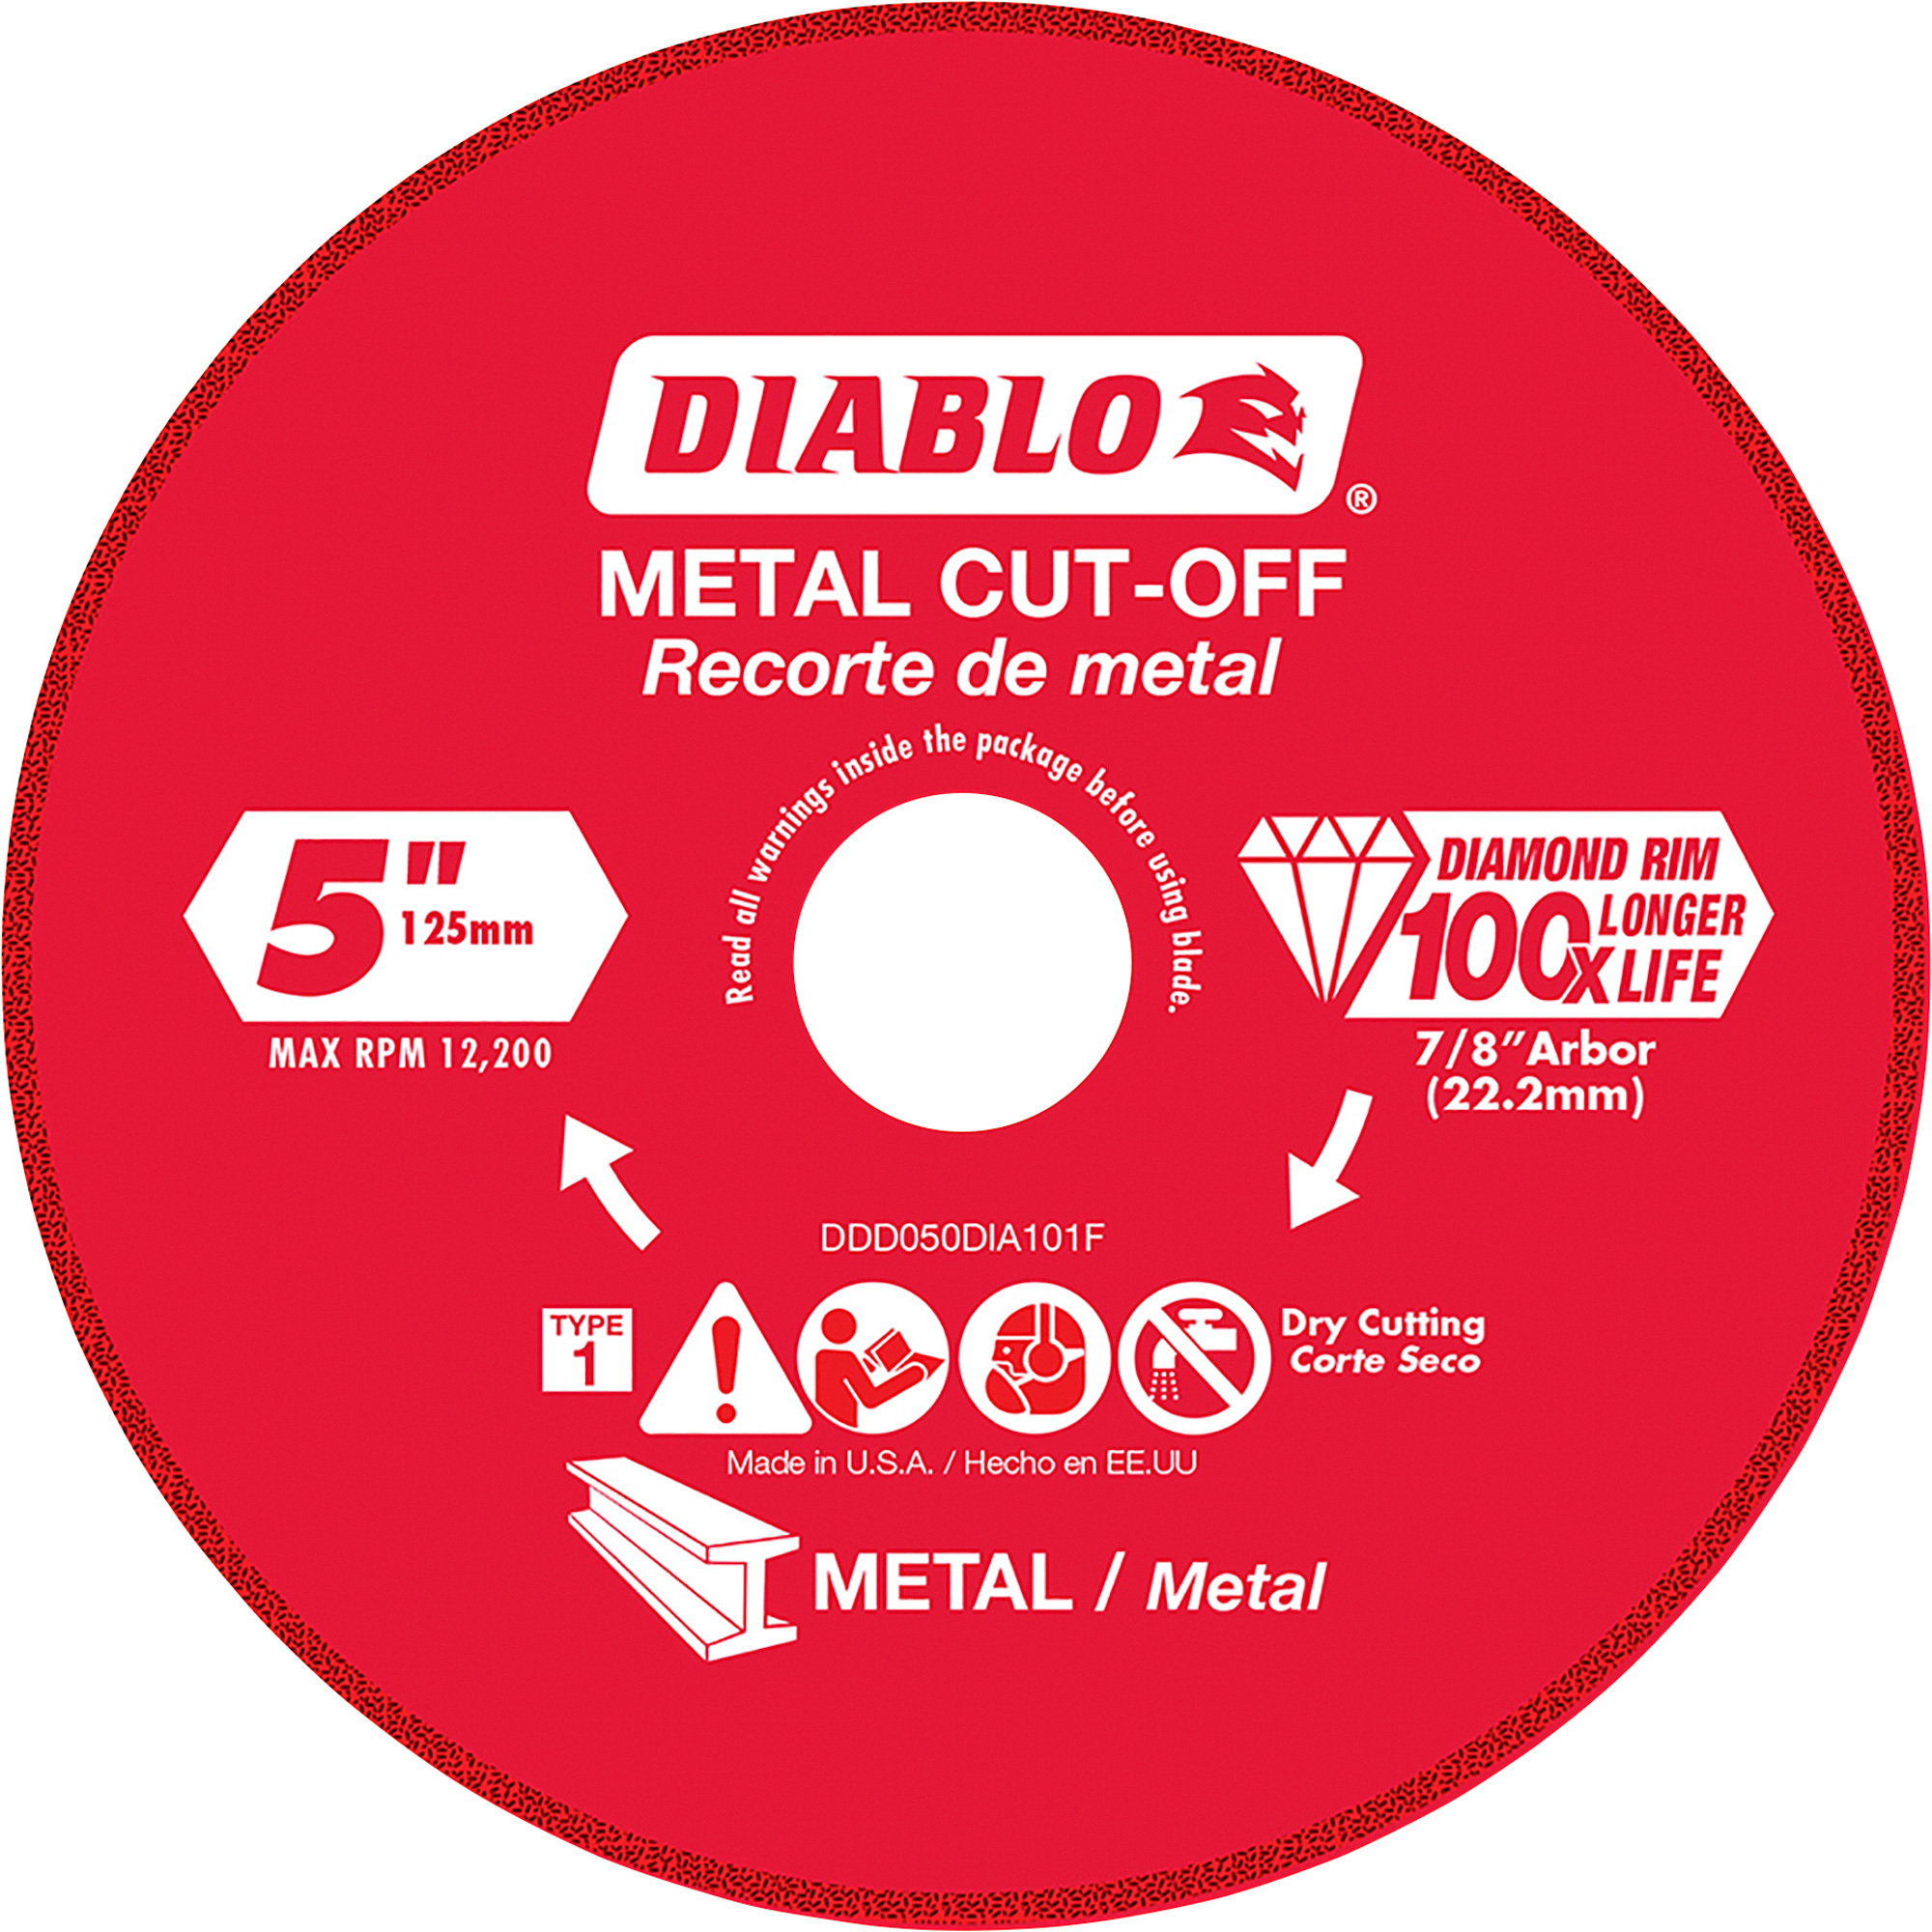 Diablo 5Inch Metal Cutting Diamond Disc, Model DDD050DIA101F